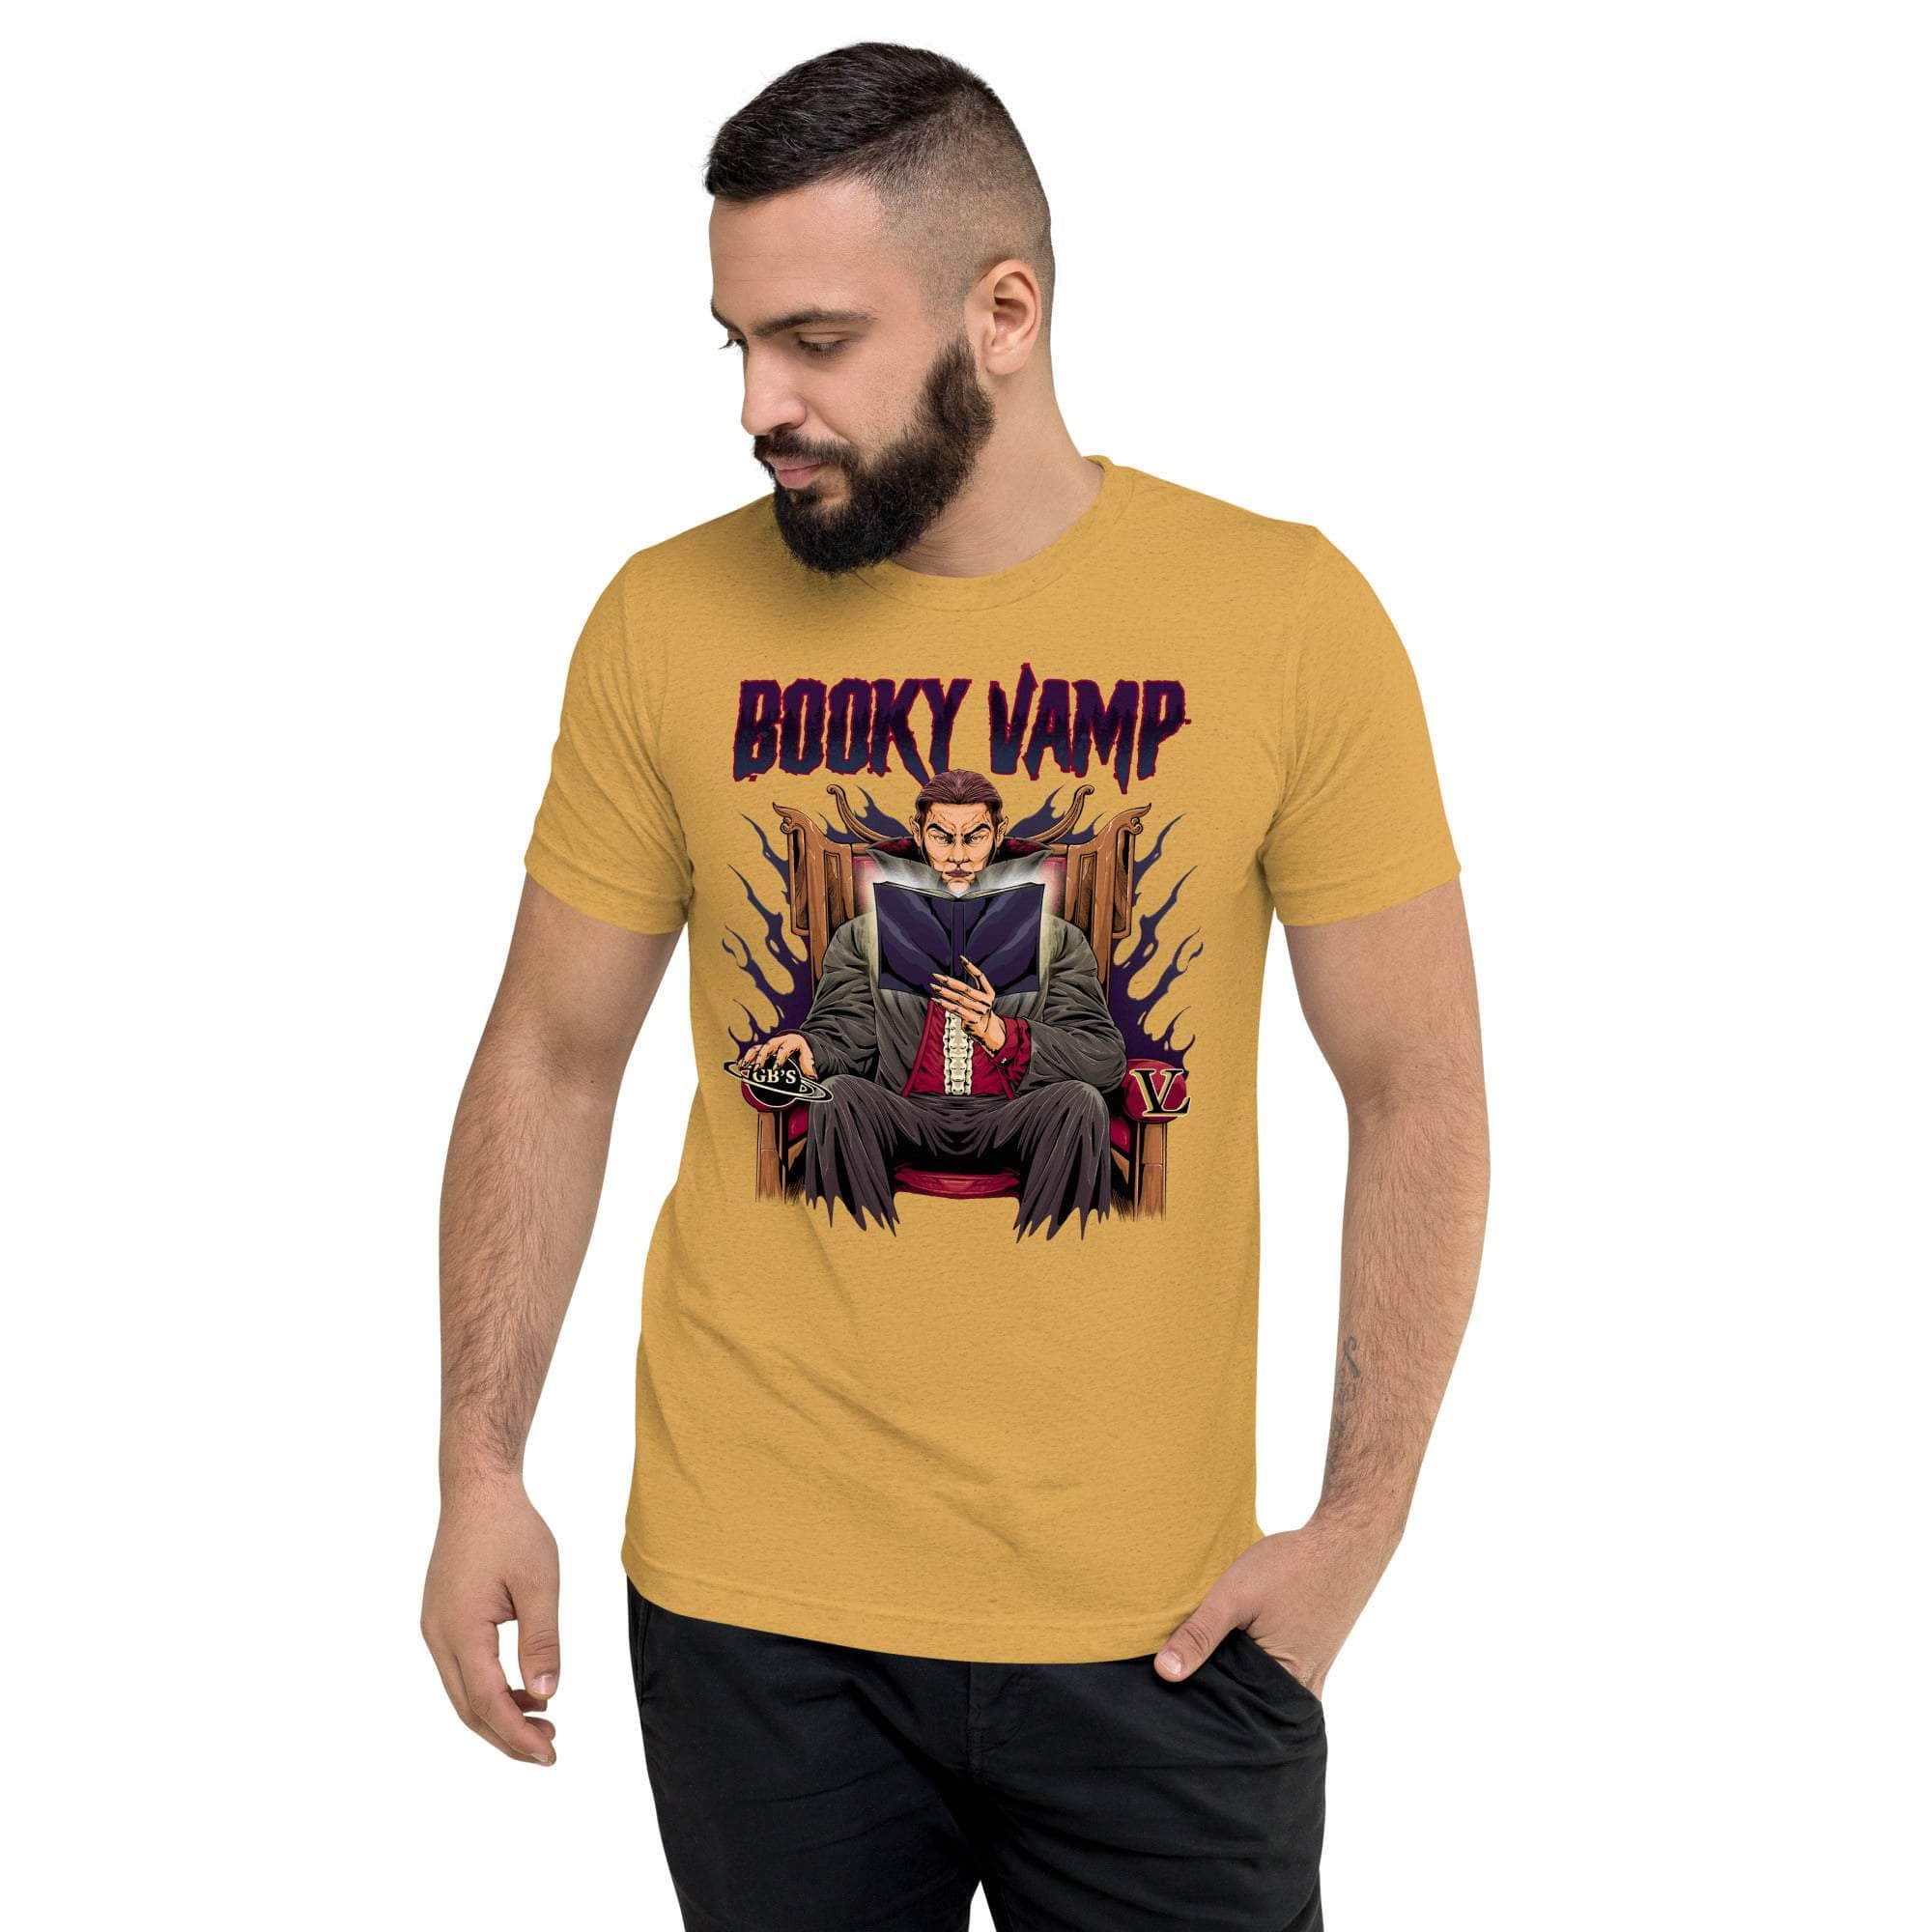 GBNY Mustard Triblend / XS Vamp Life X GBNY "Booky Vamp" T-shirt - Men's 2381652_16728